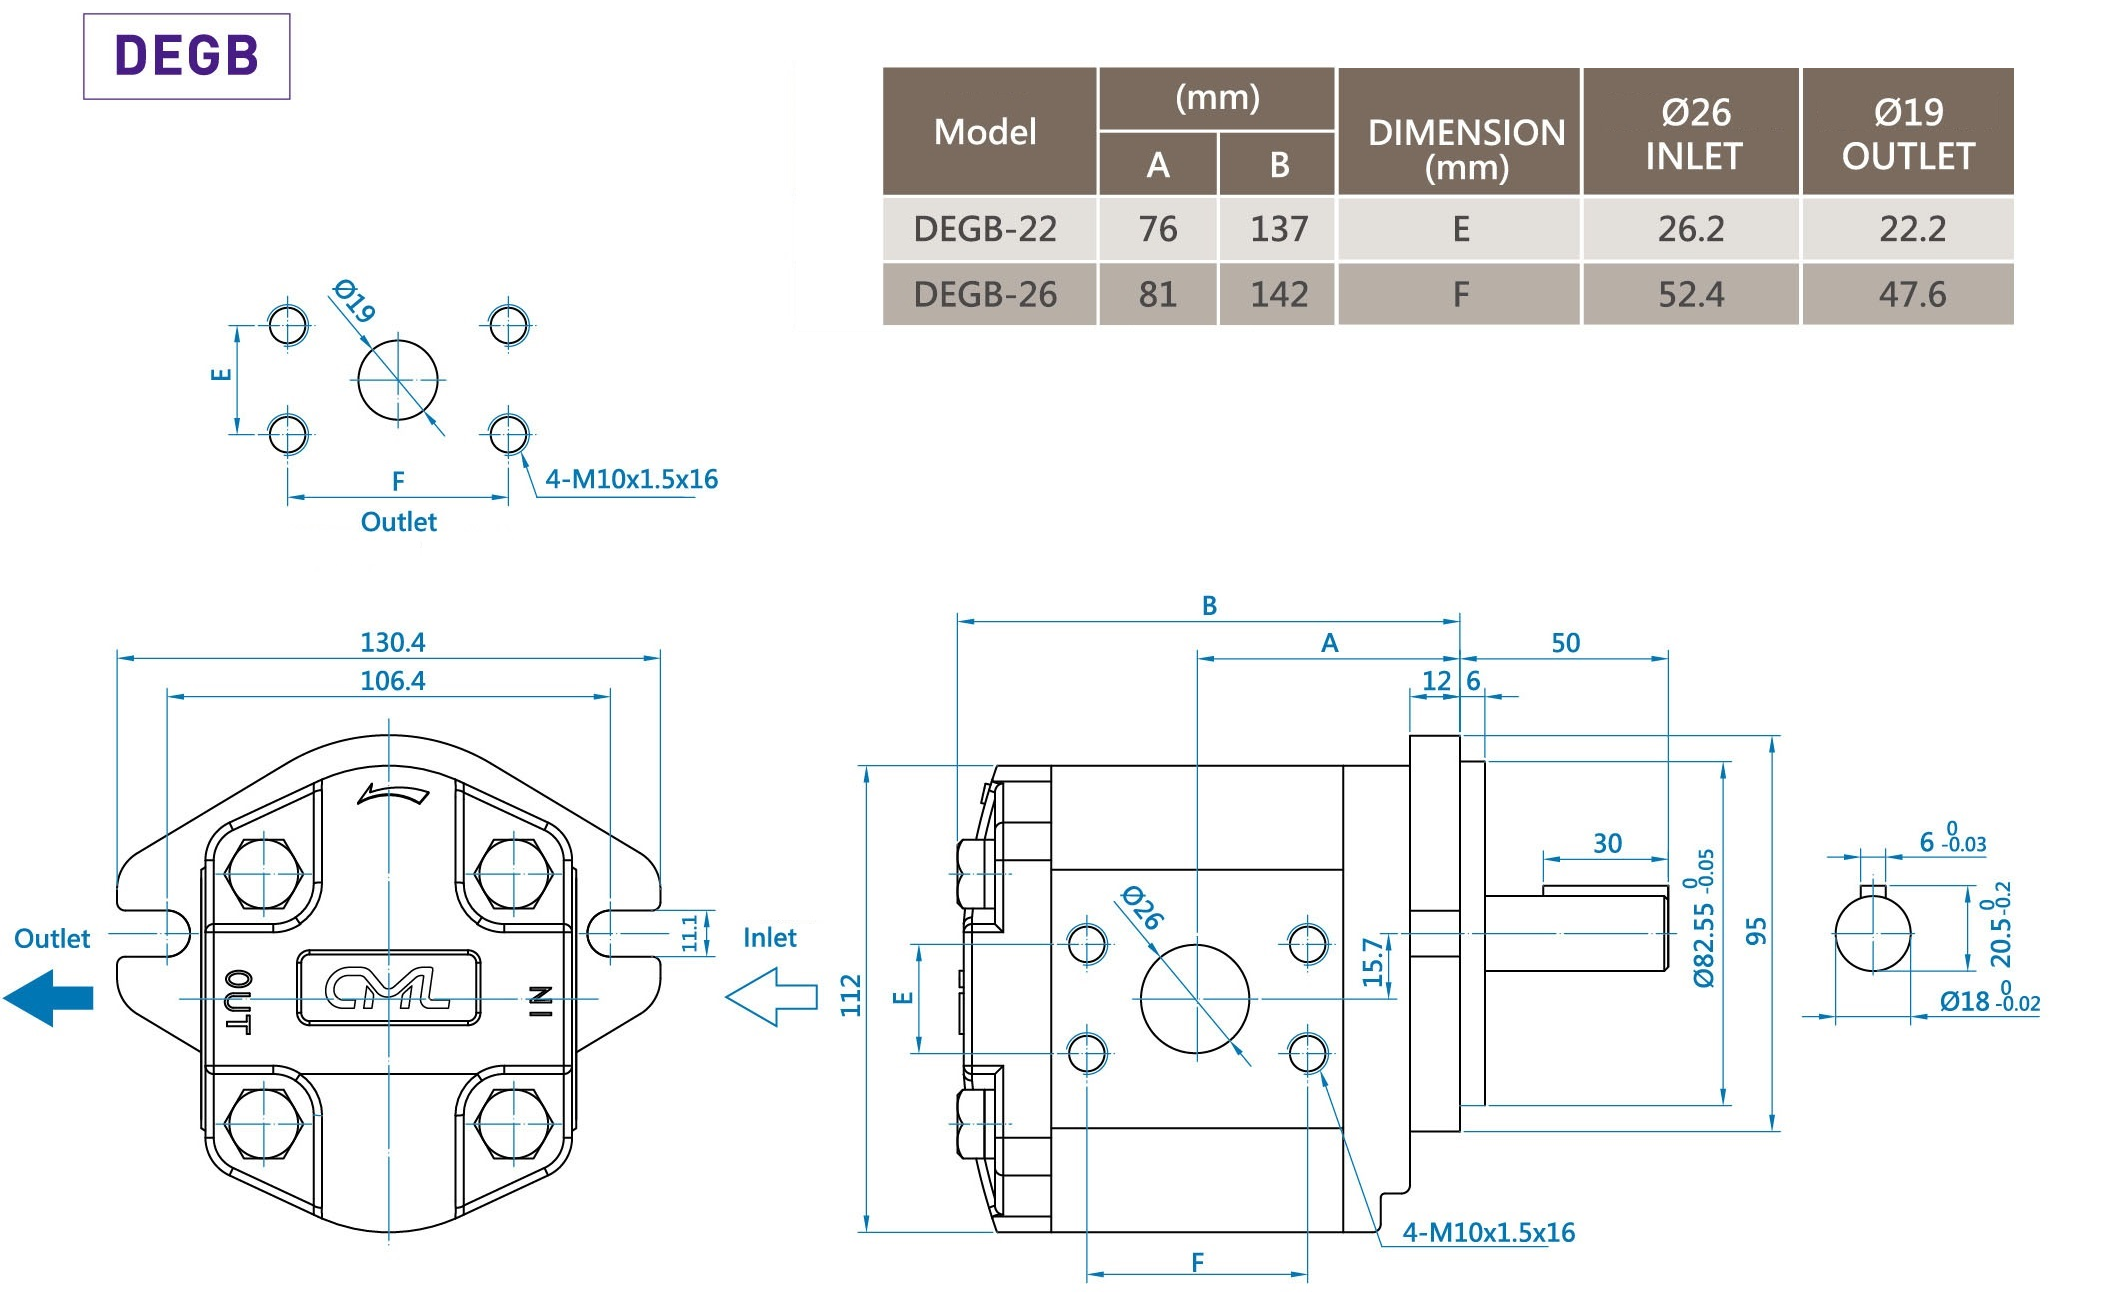 CML Medición, dimensiones y diagrama de la bomba de engranajes externos de doble engranaje de baja sonoridad DEGB de la serie B